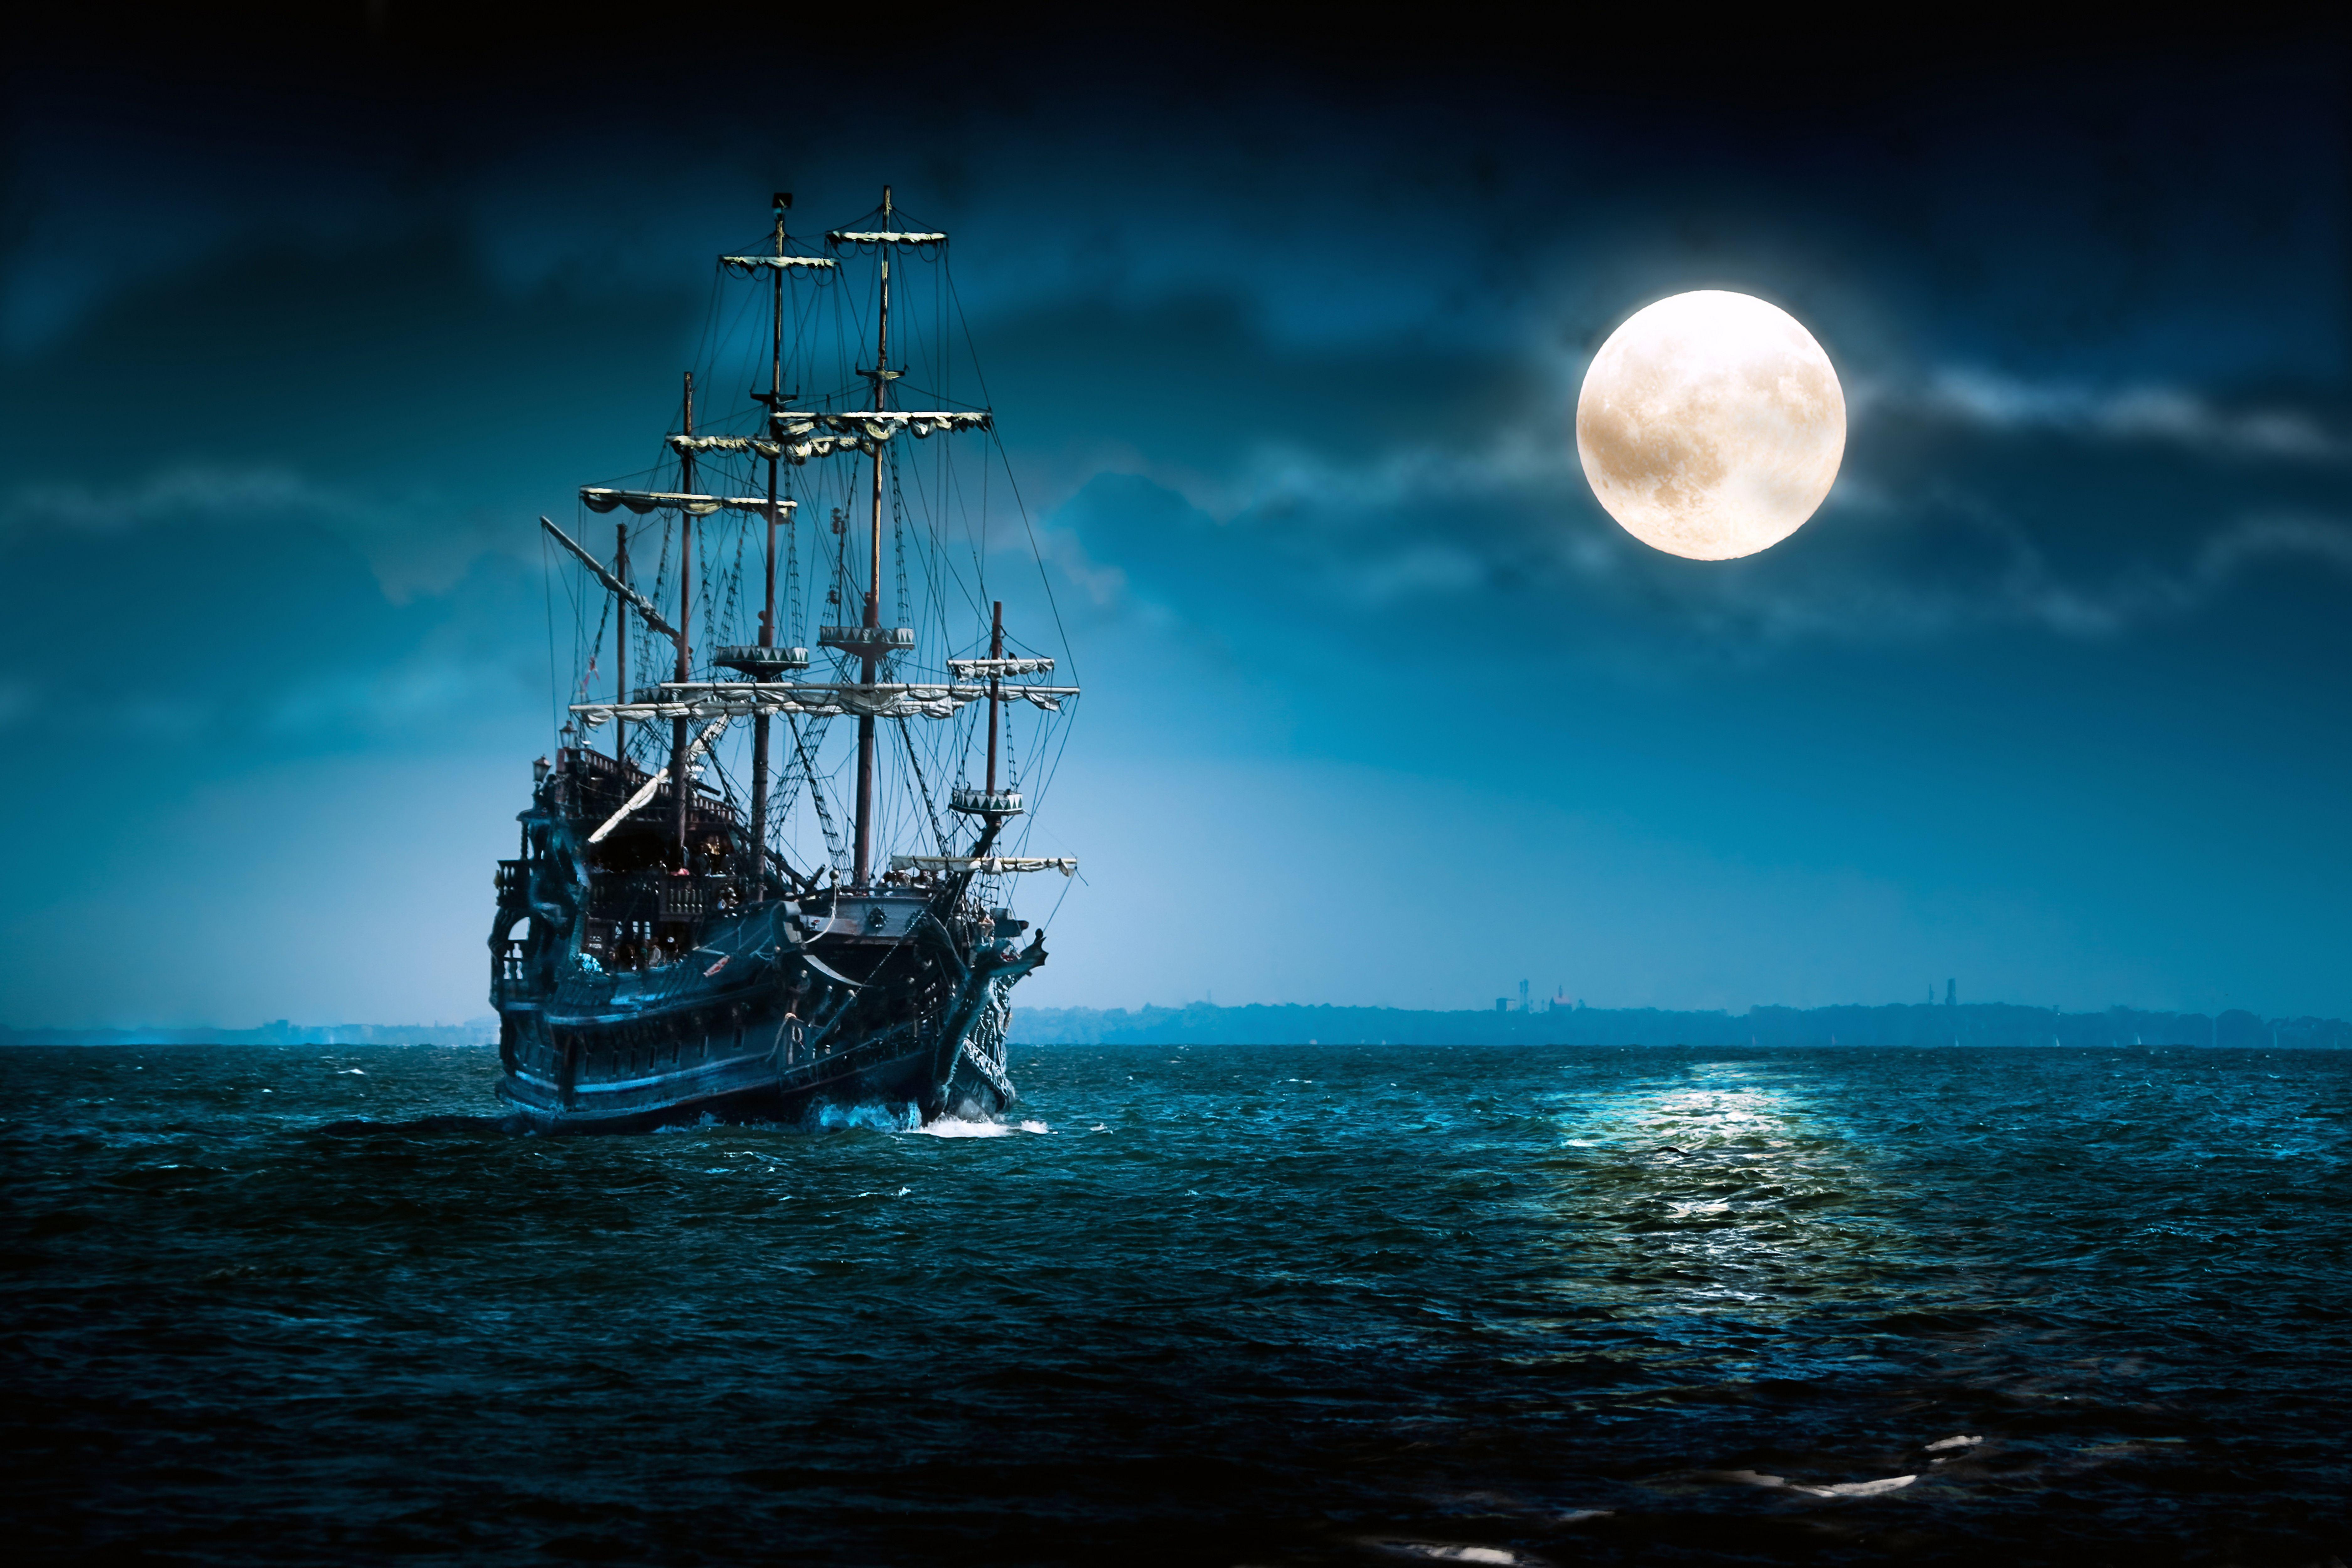 Ships at Night Wallpaper Free Ships at Night Background